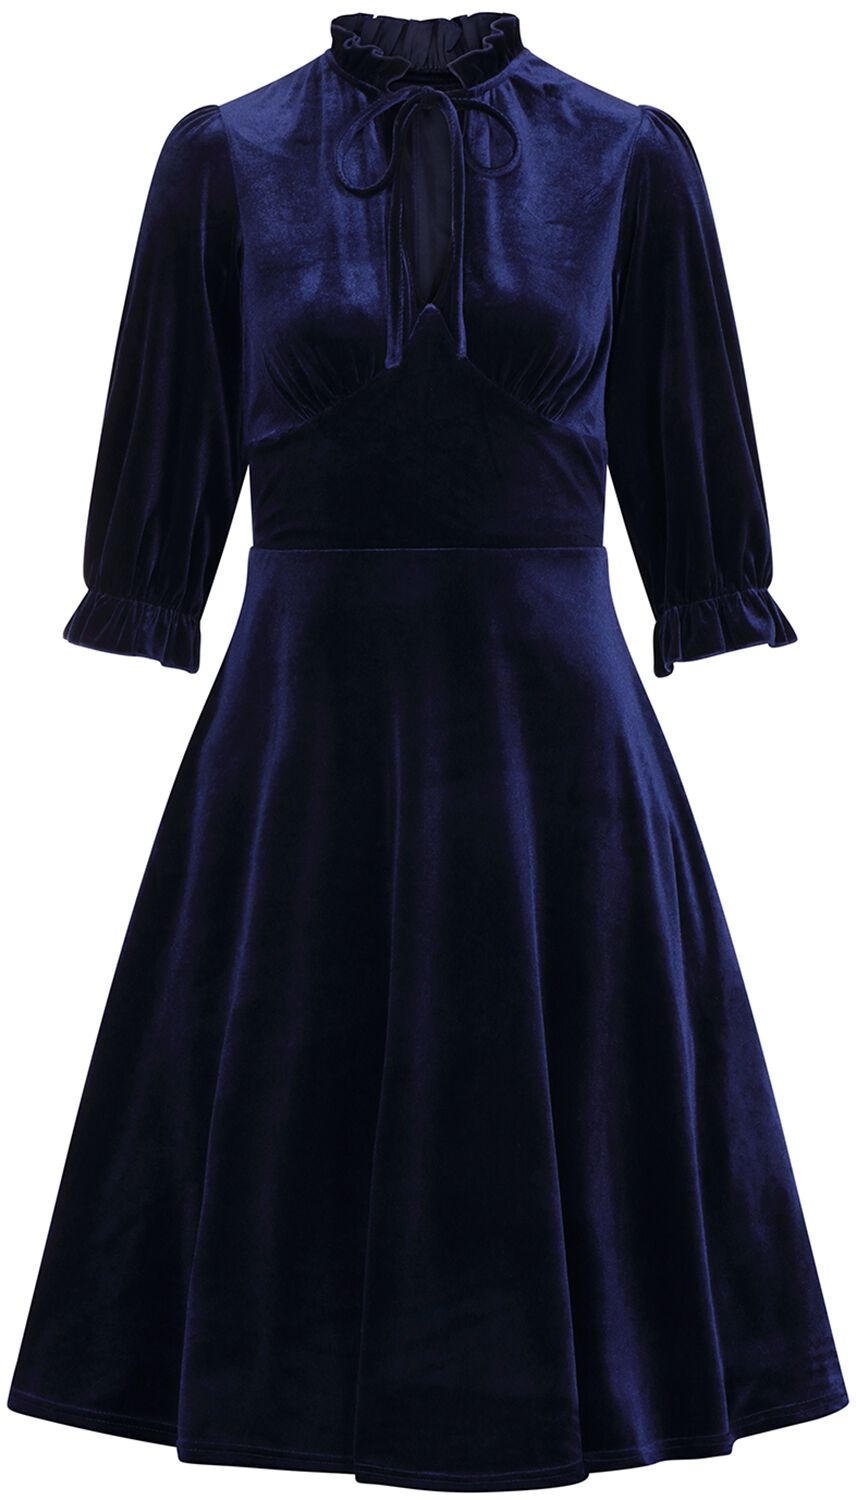 Hell Bunny - Rockabilly Kleid knielang - Orion Dress - XS bis 4XL - für Damen - Größe 4XL - blau von hell bunny